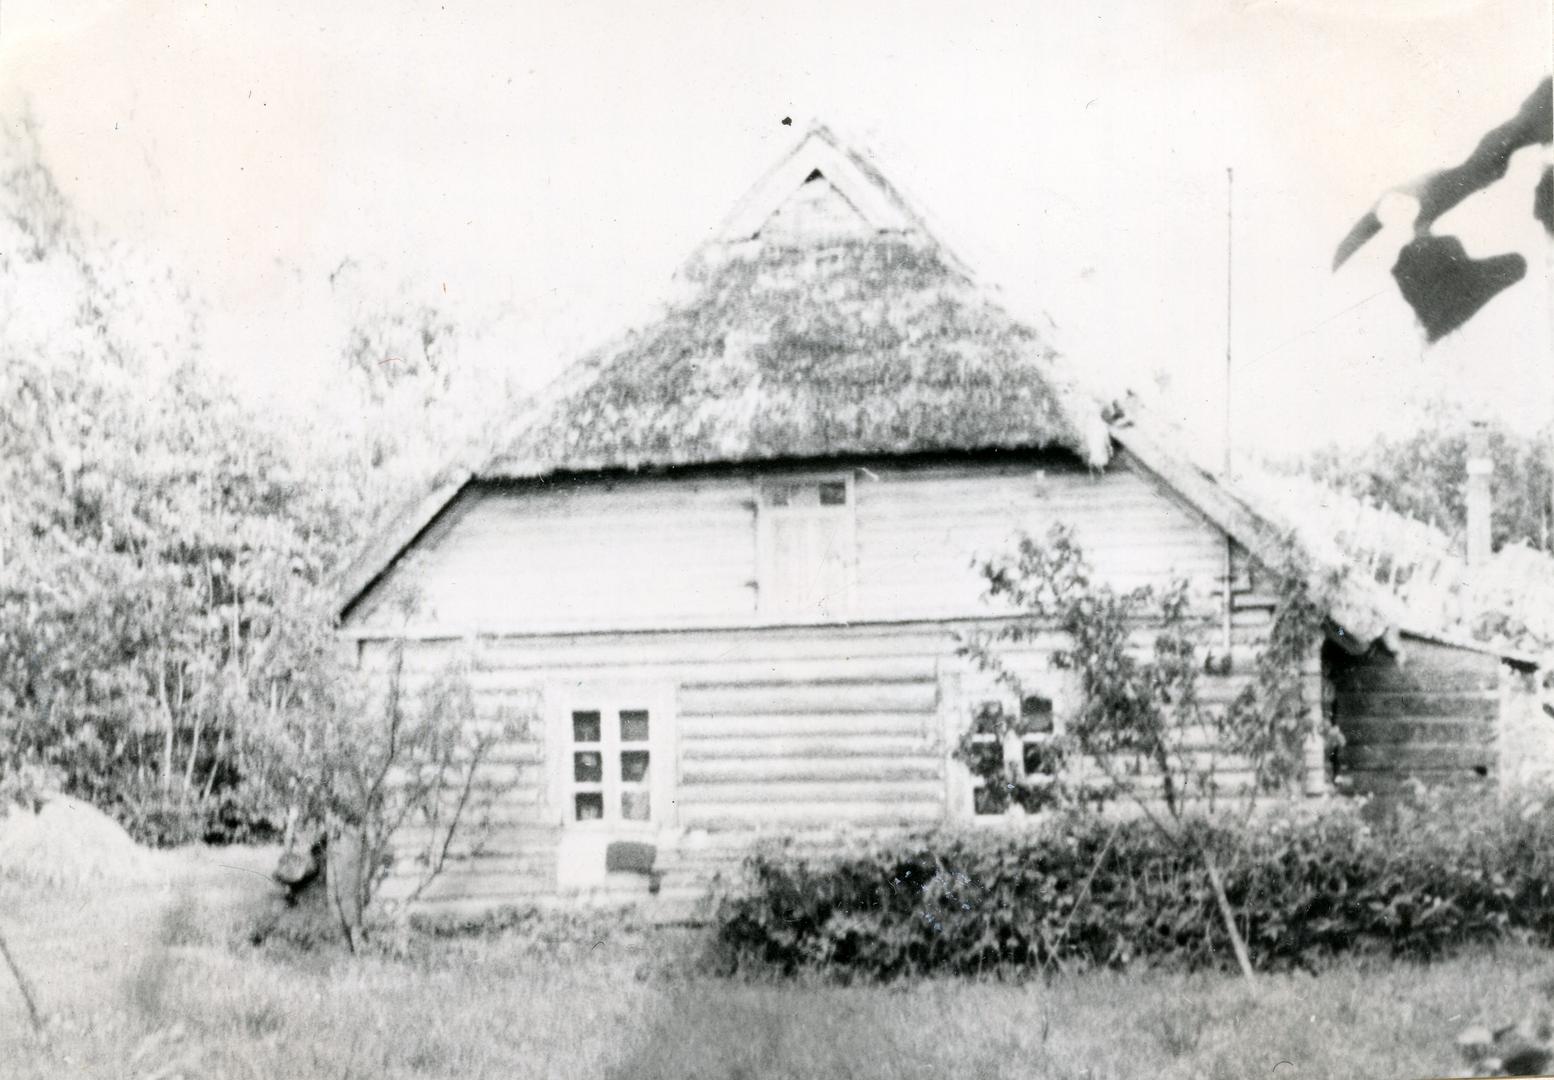 School farm buildings in Laiküla